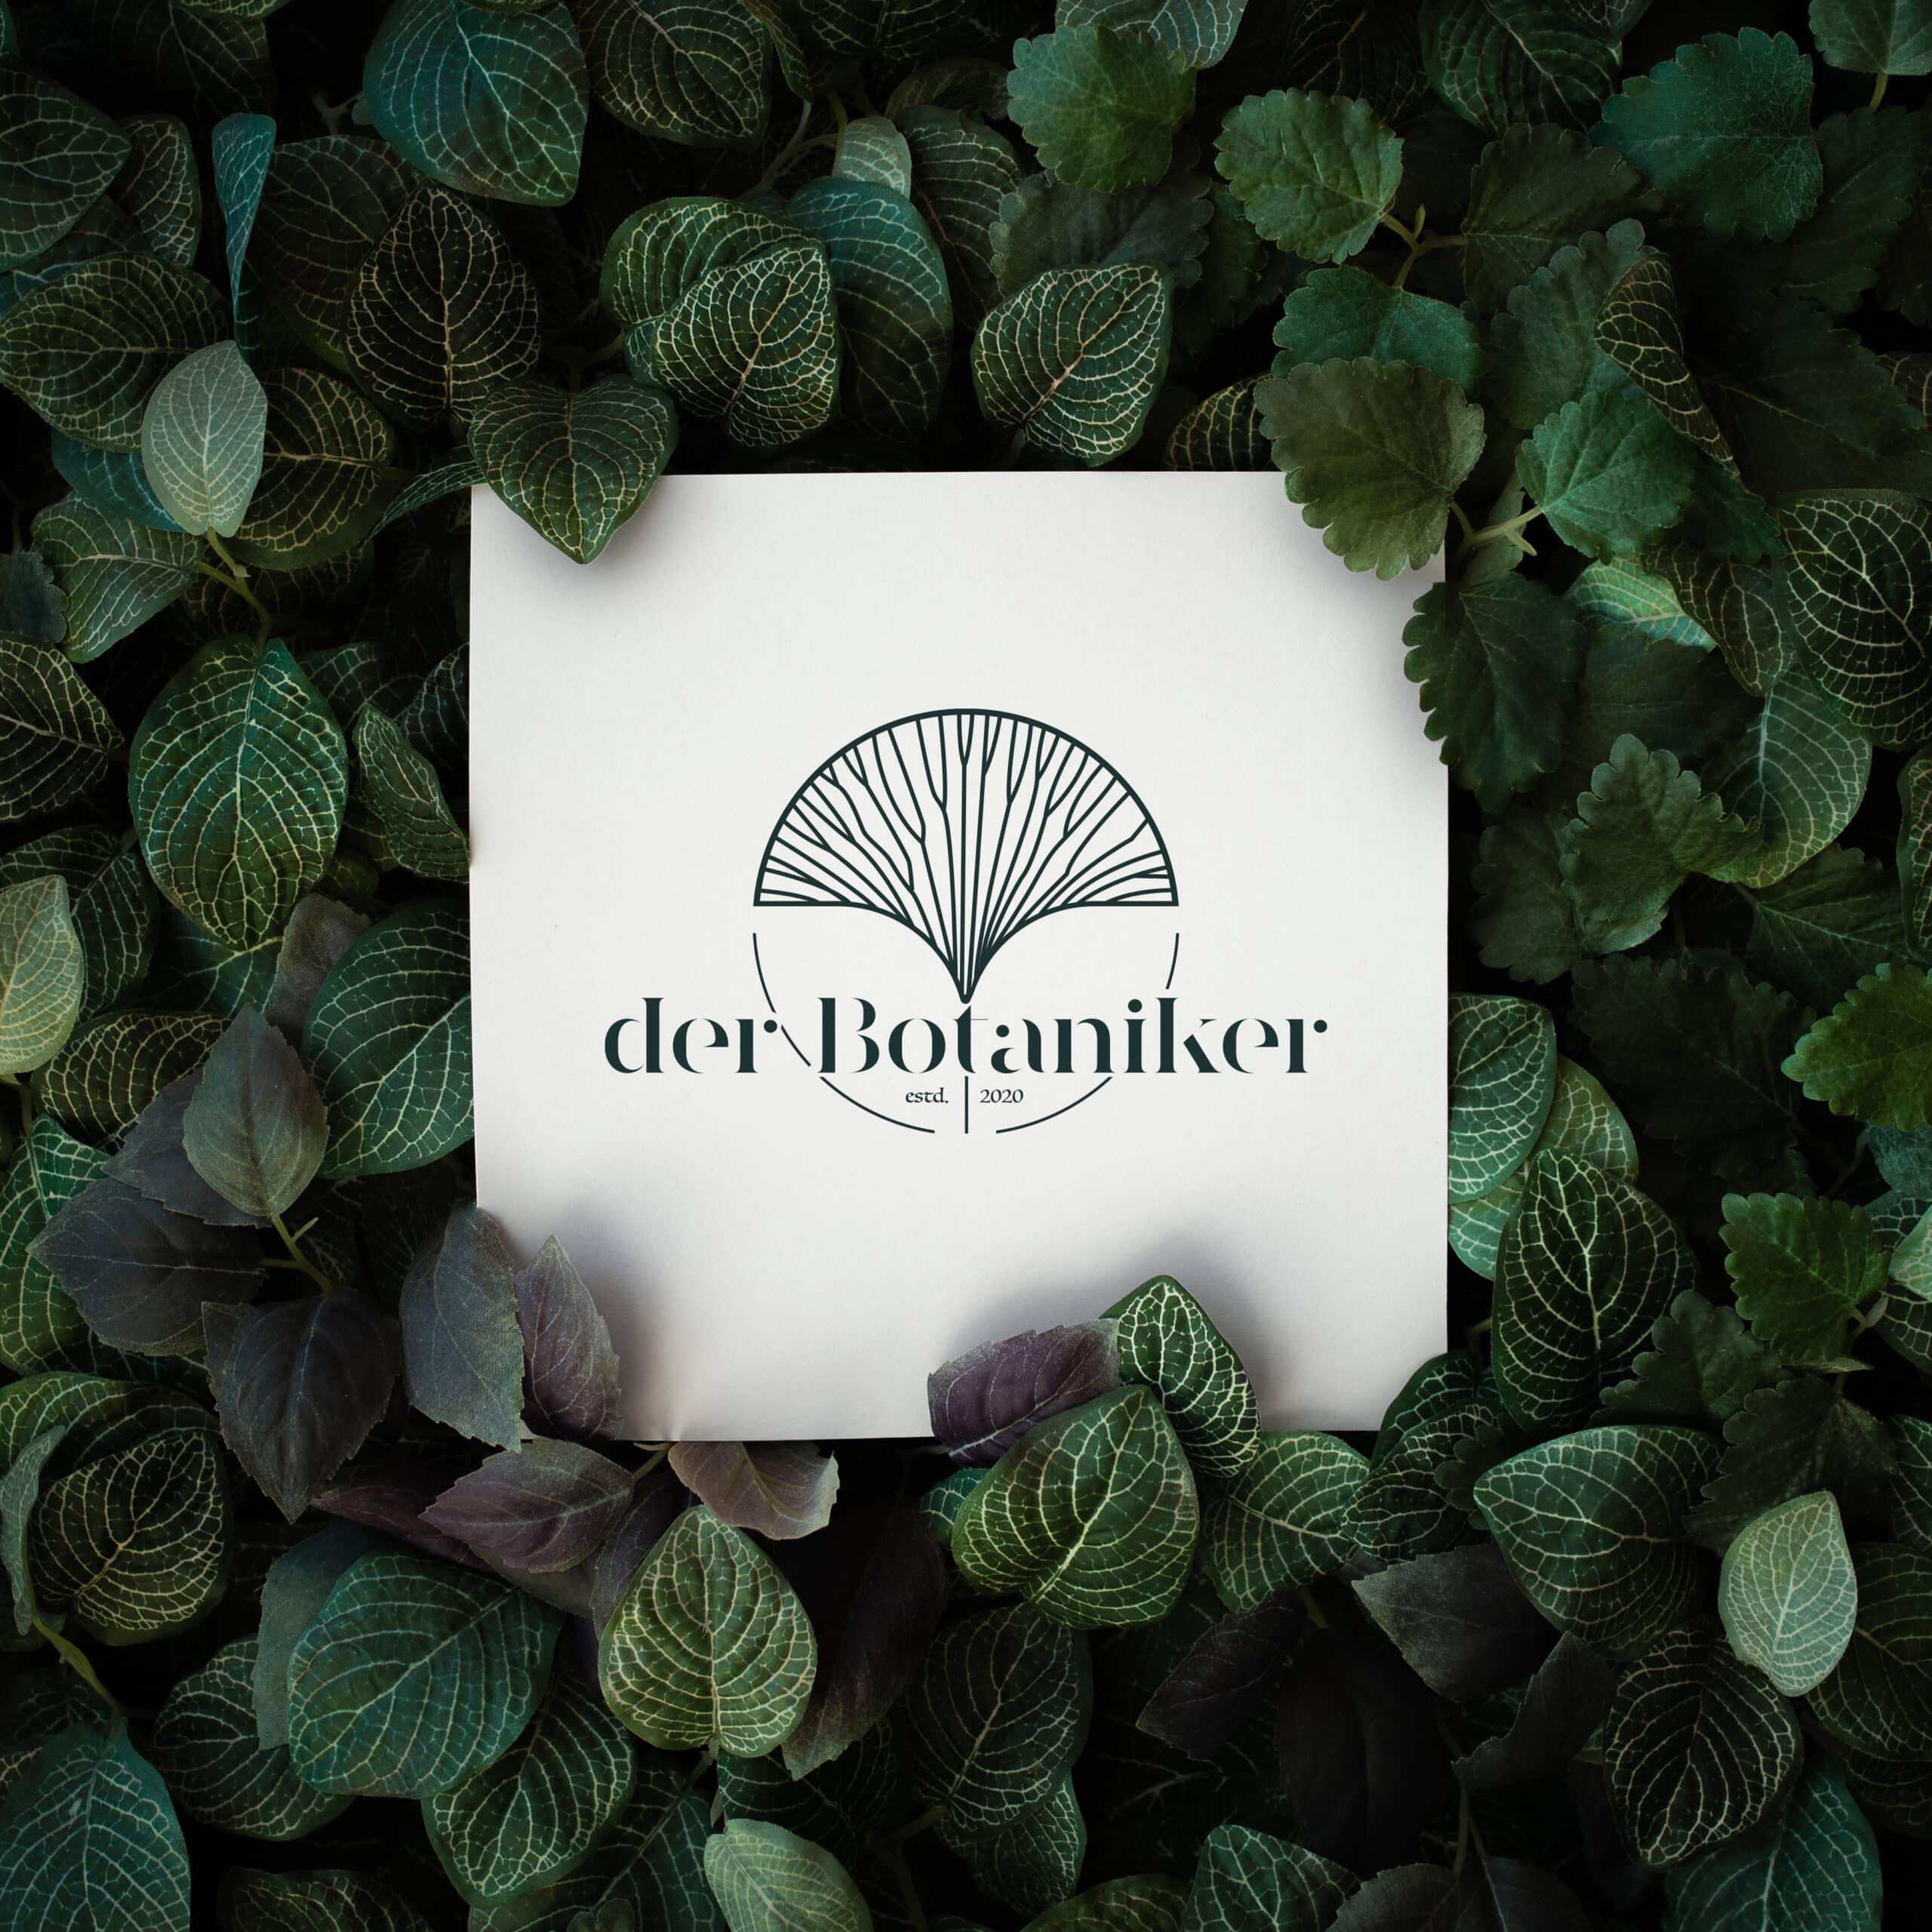 Markenlogo 'DerBotaniker' auf weißem Hintergrund, umgeben von grünen Pflanzenblättern, symbolisiert das natürliche und frische Image der Marke.